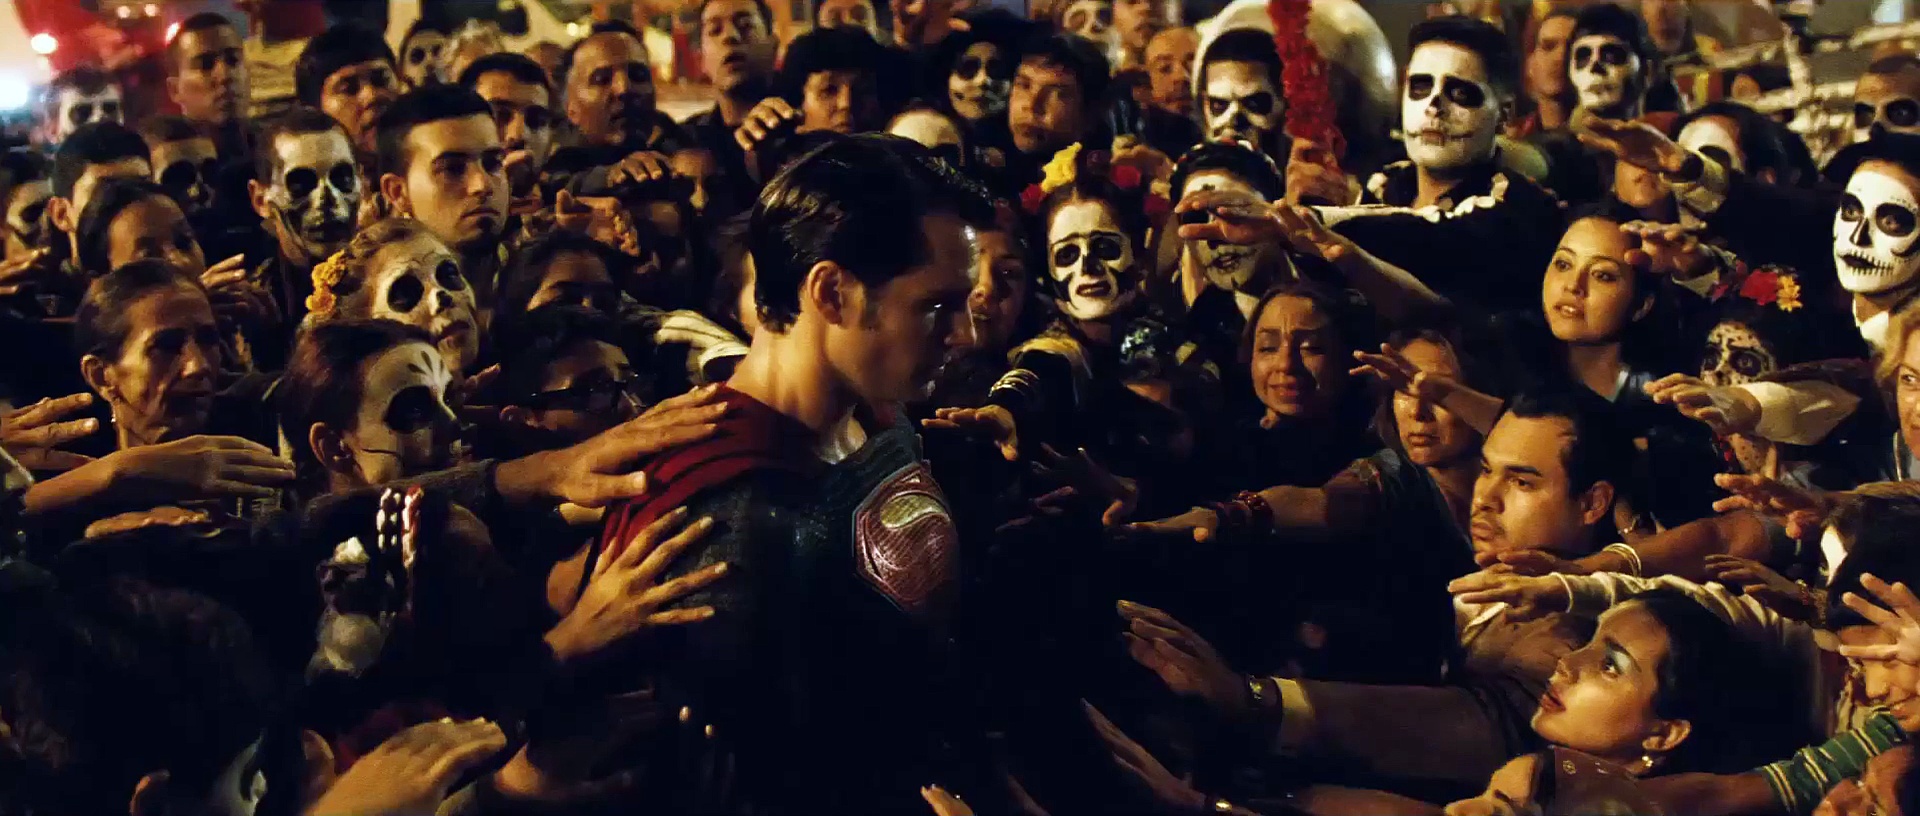 Batman v Superman: El amanecer de la justicia' – Trailer Comic-Con español  (HD)Trailers y Estrenos